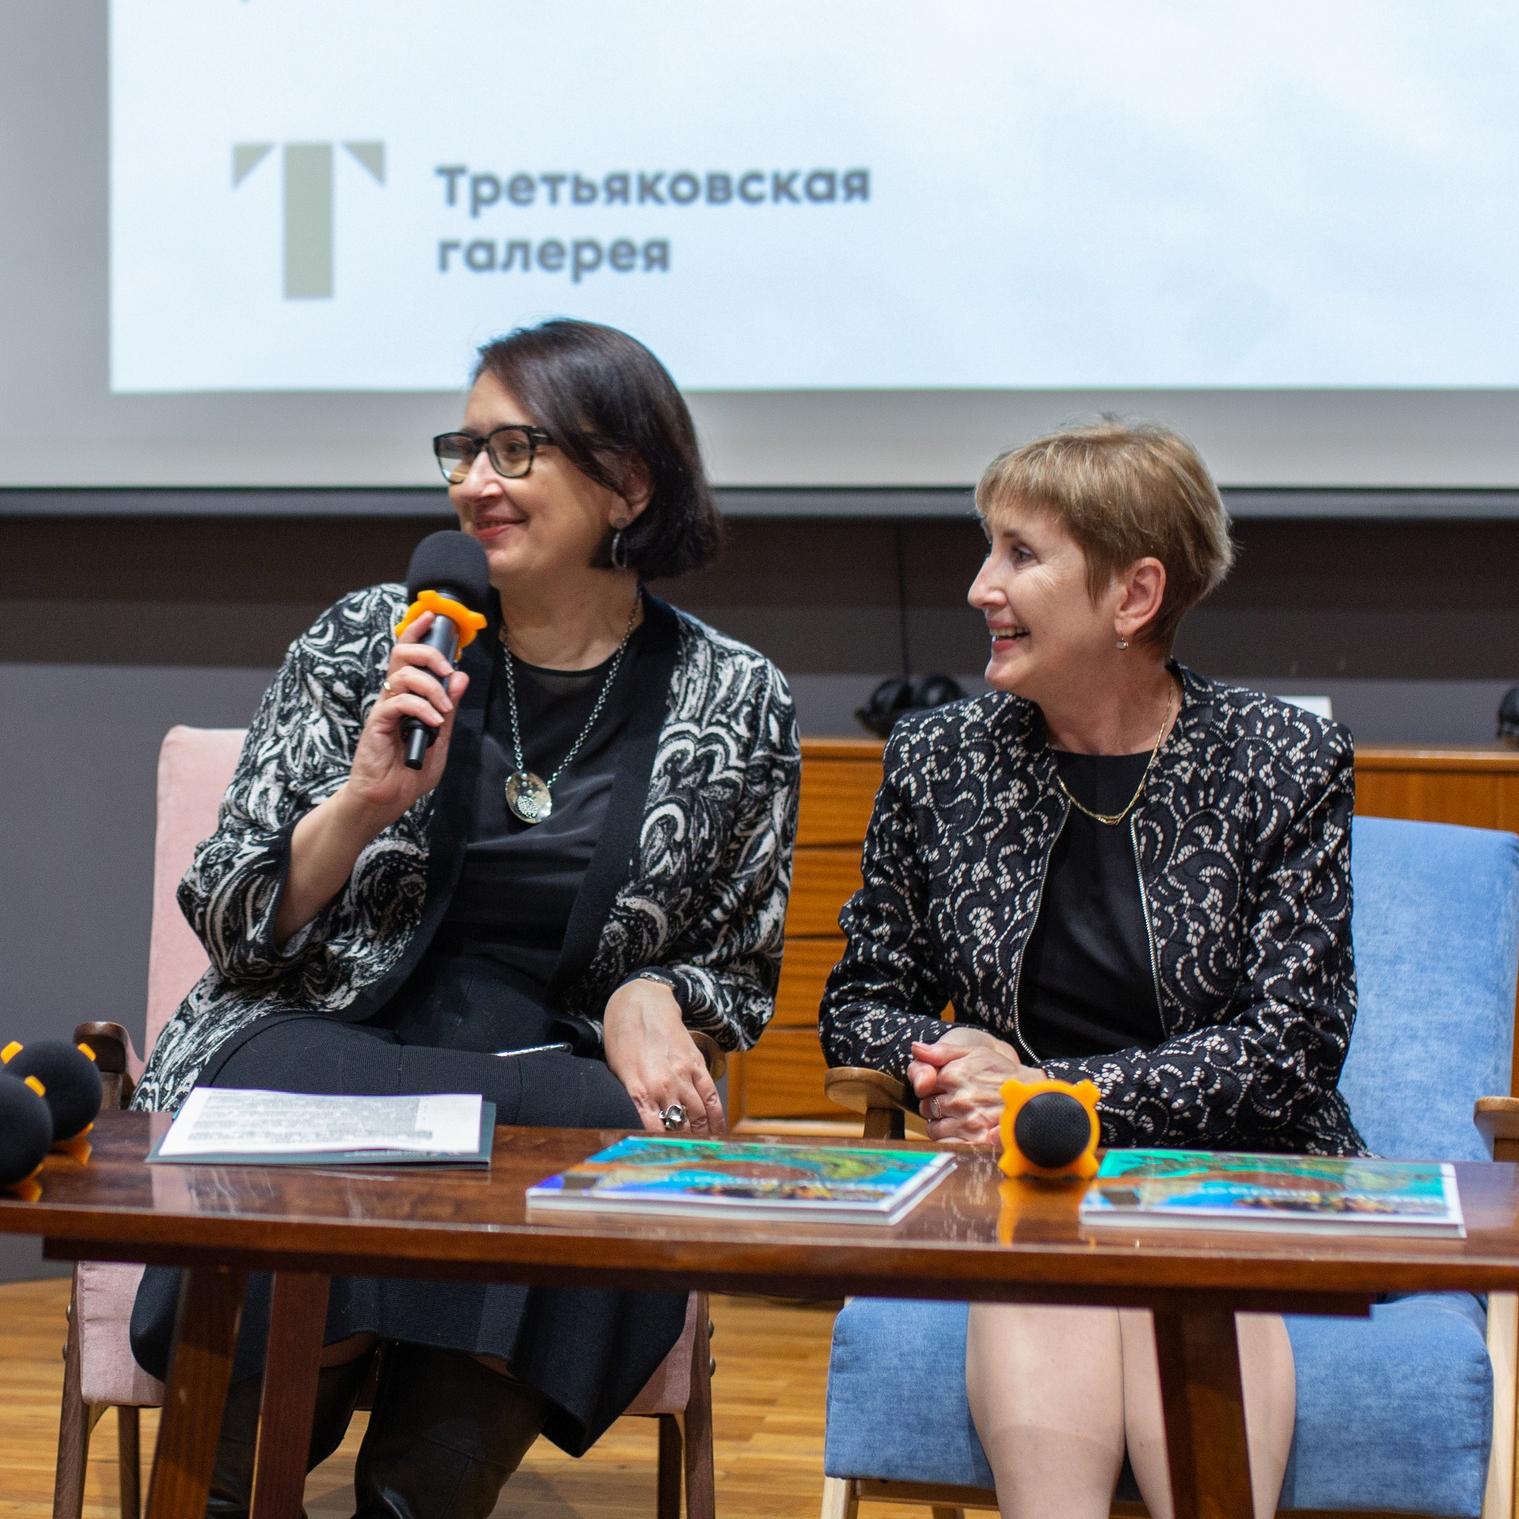 Третьяковская галерея и Фонд Потанина представили инклюзивный проект «Добрый музей»